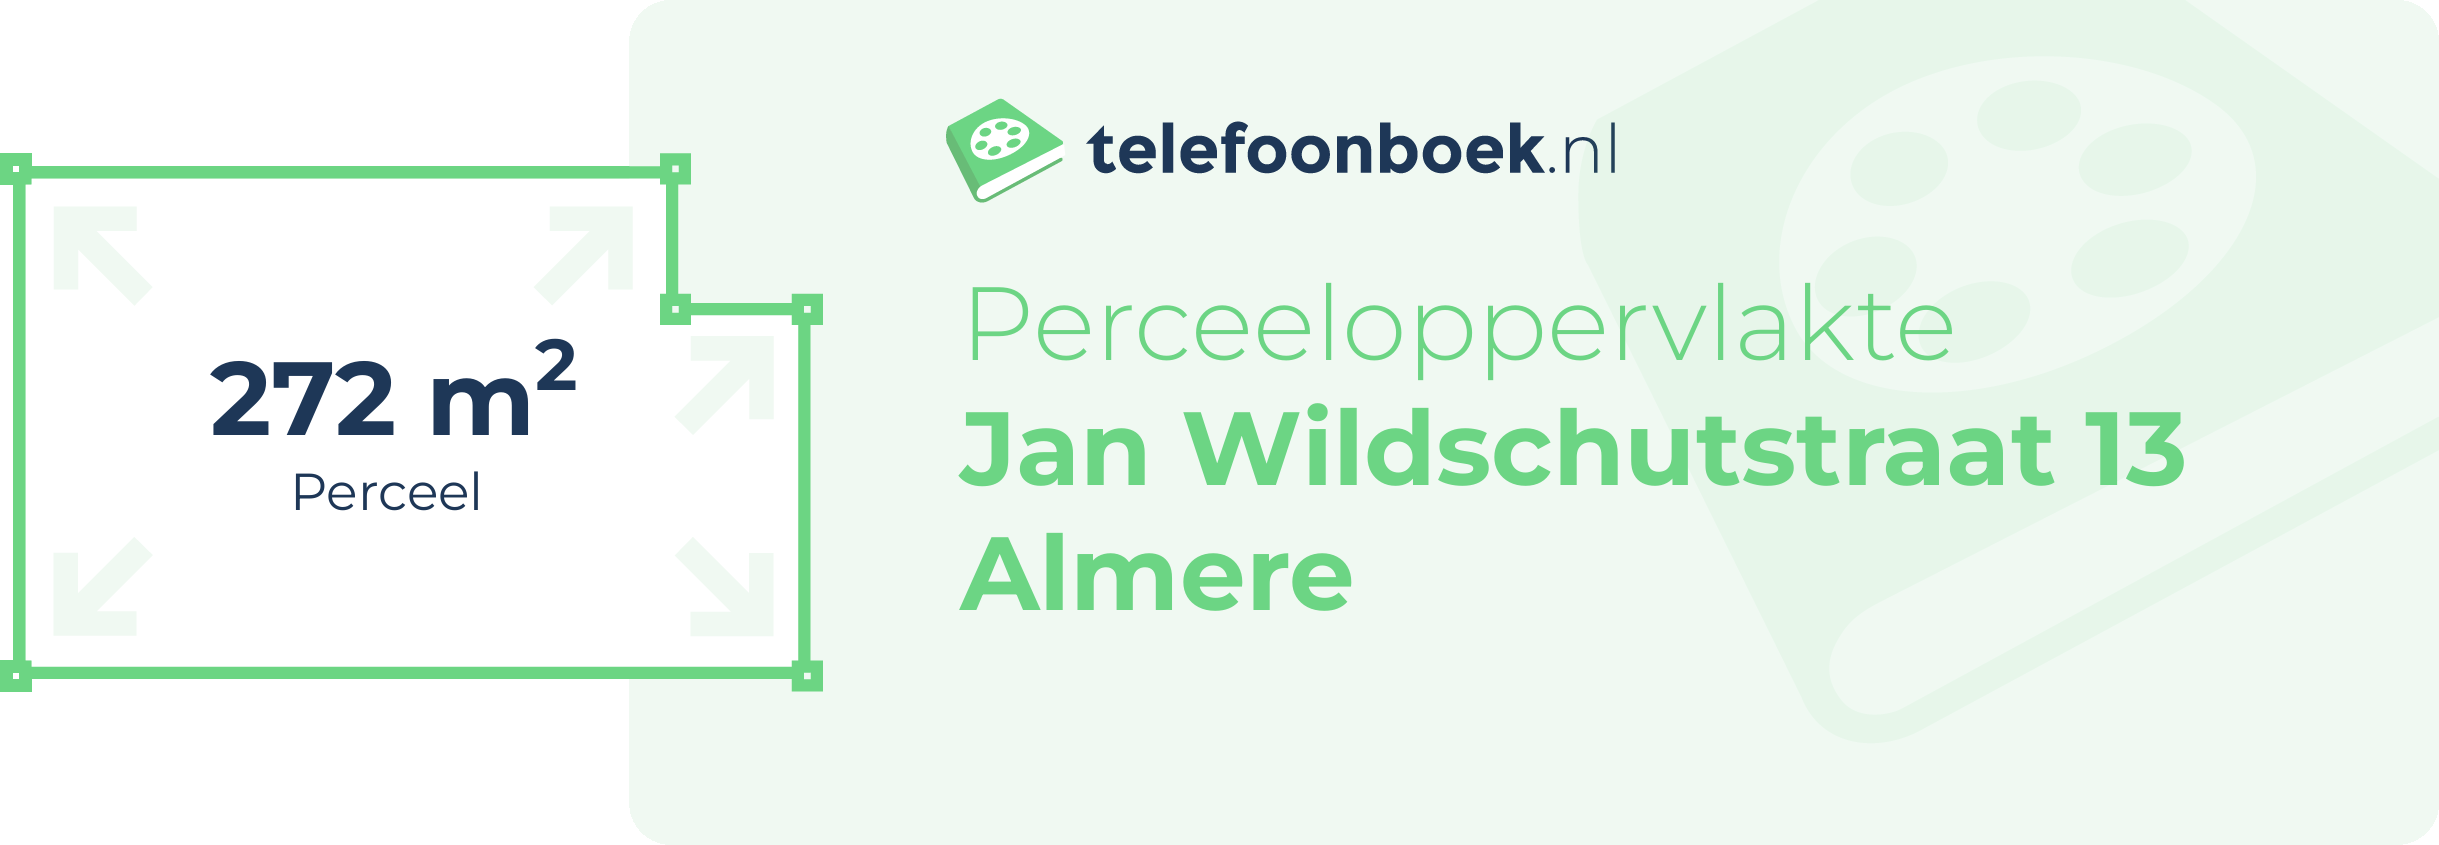 Perceeloppervlakte Jan Wildschutstraat 13 Almere